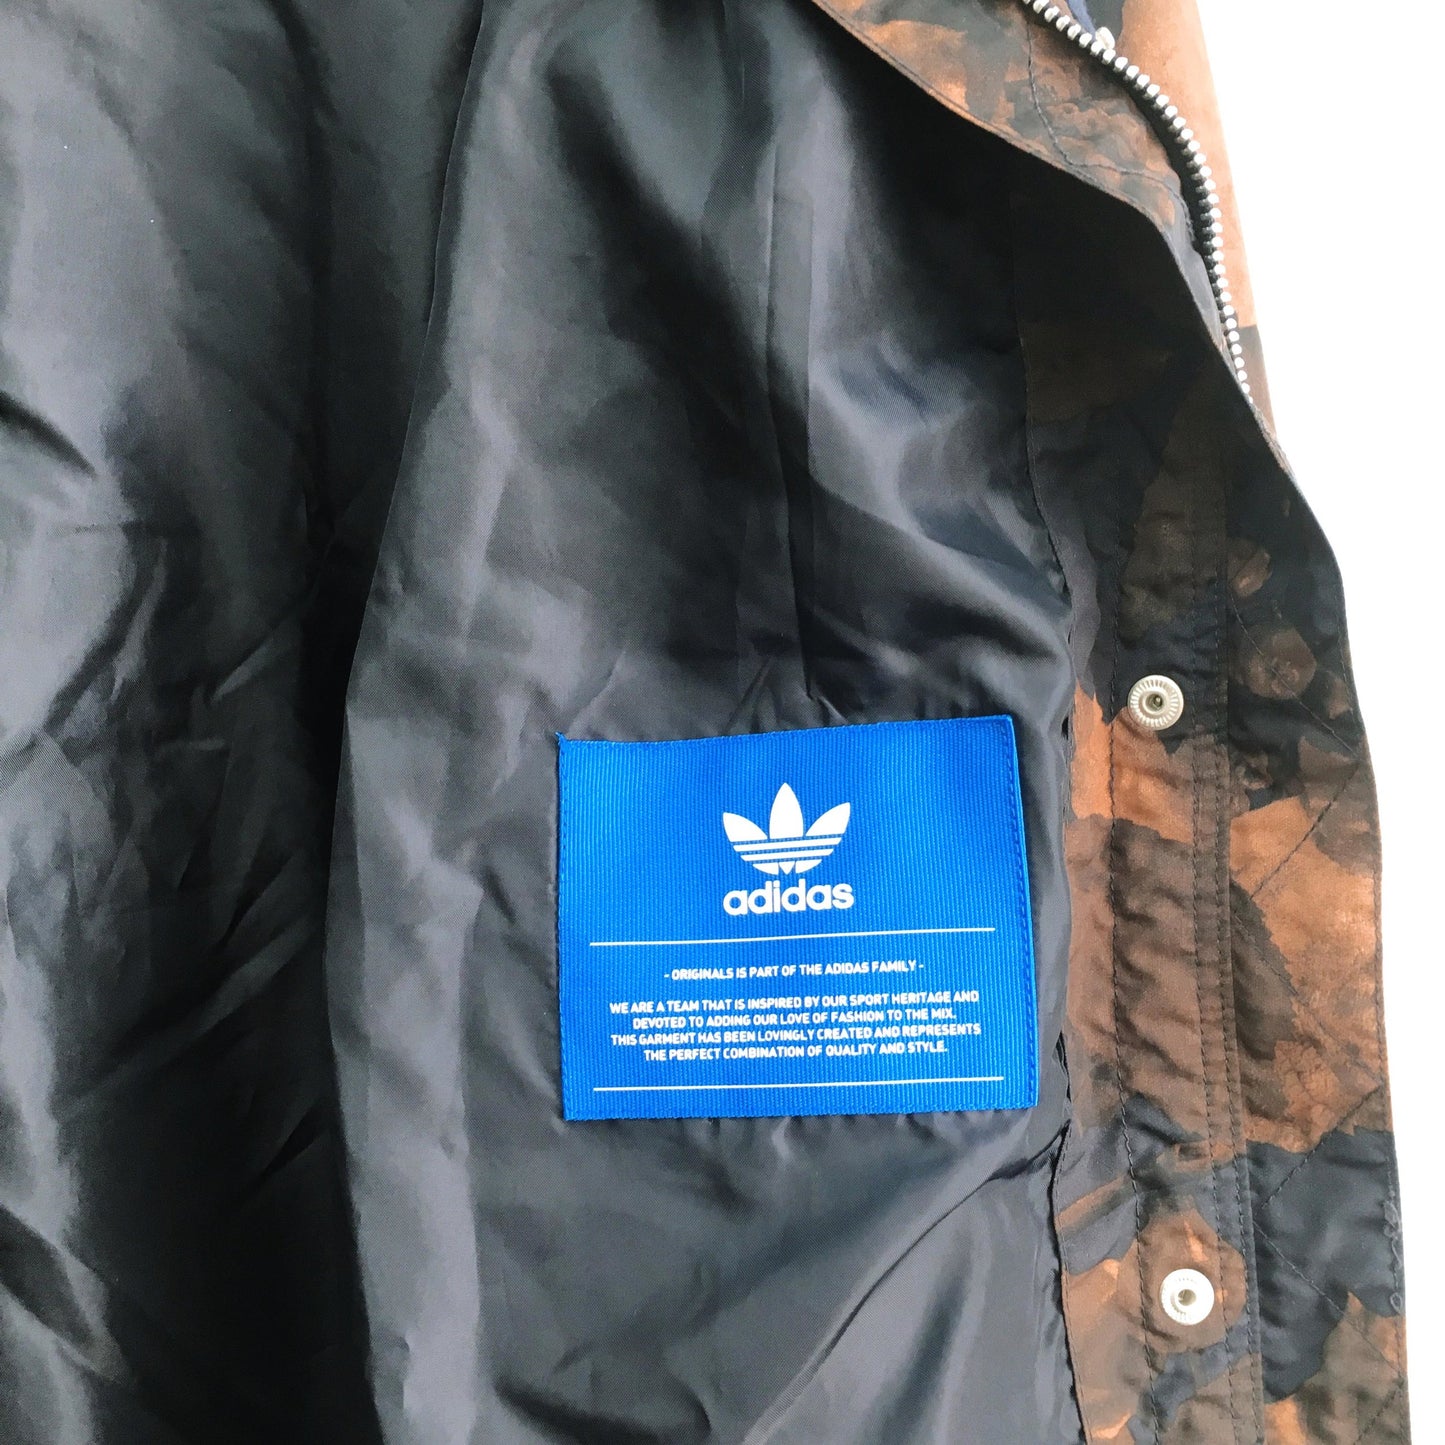 Adidas Leaf Camo Jacket - size xs